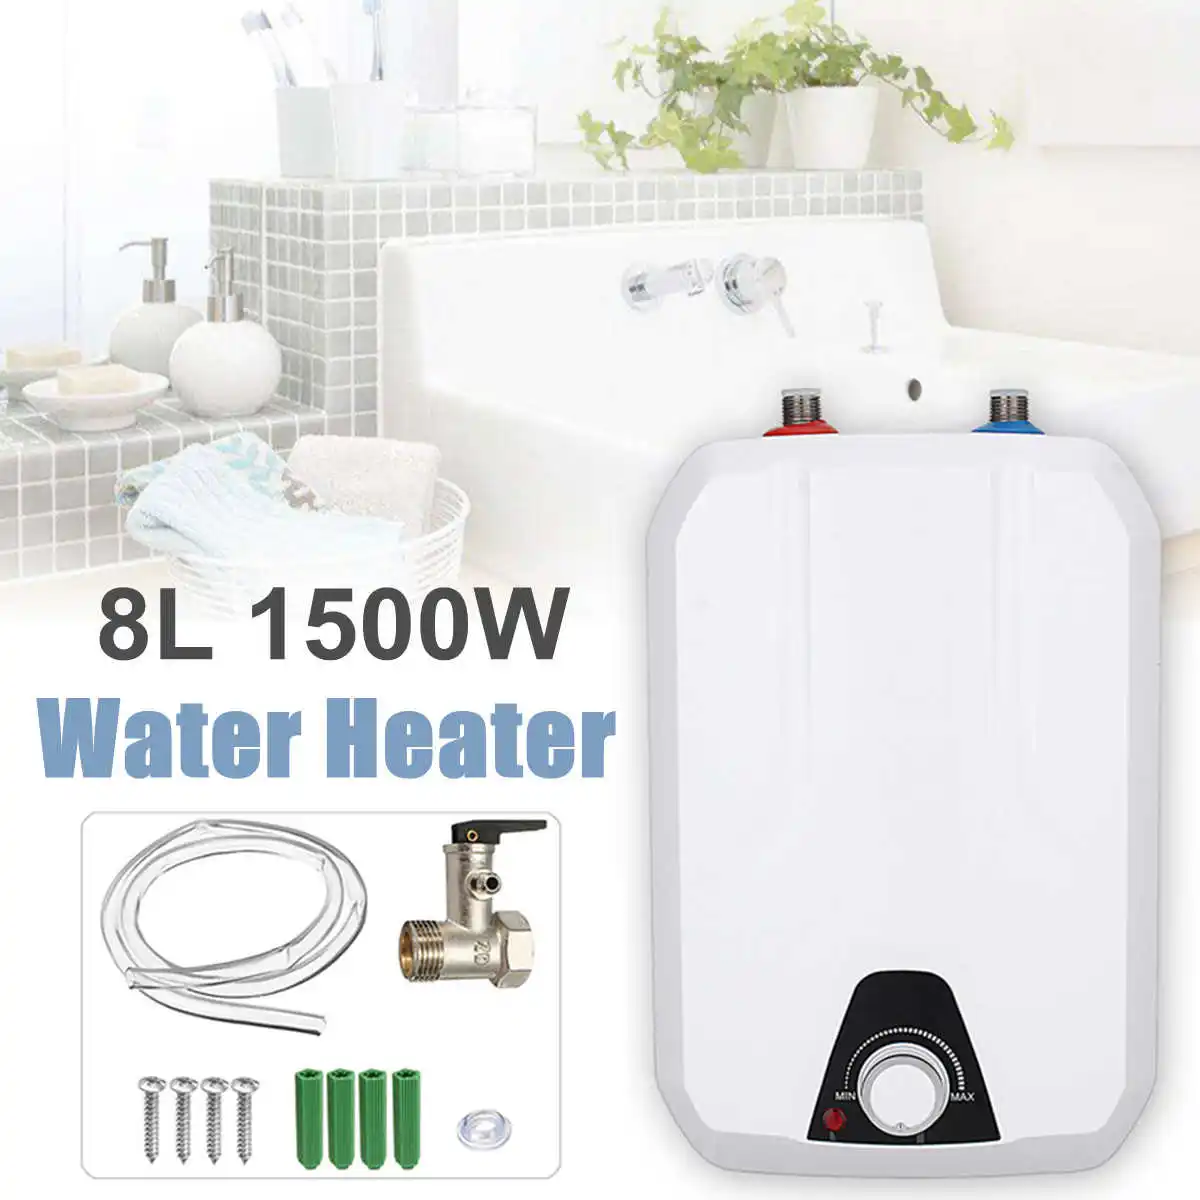 

Домашний электрический безрезервуарный нагреватель горячей воды, 8 л, 1500 Вт, мгновенный нагреватель воды, быстрый нагрев горячего душа